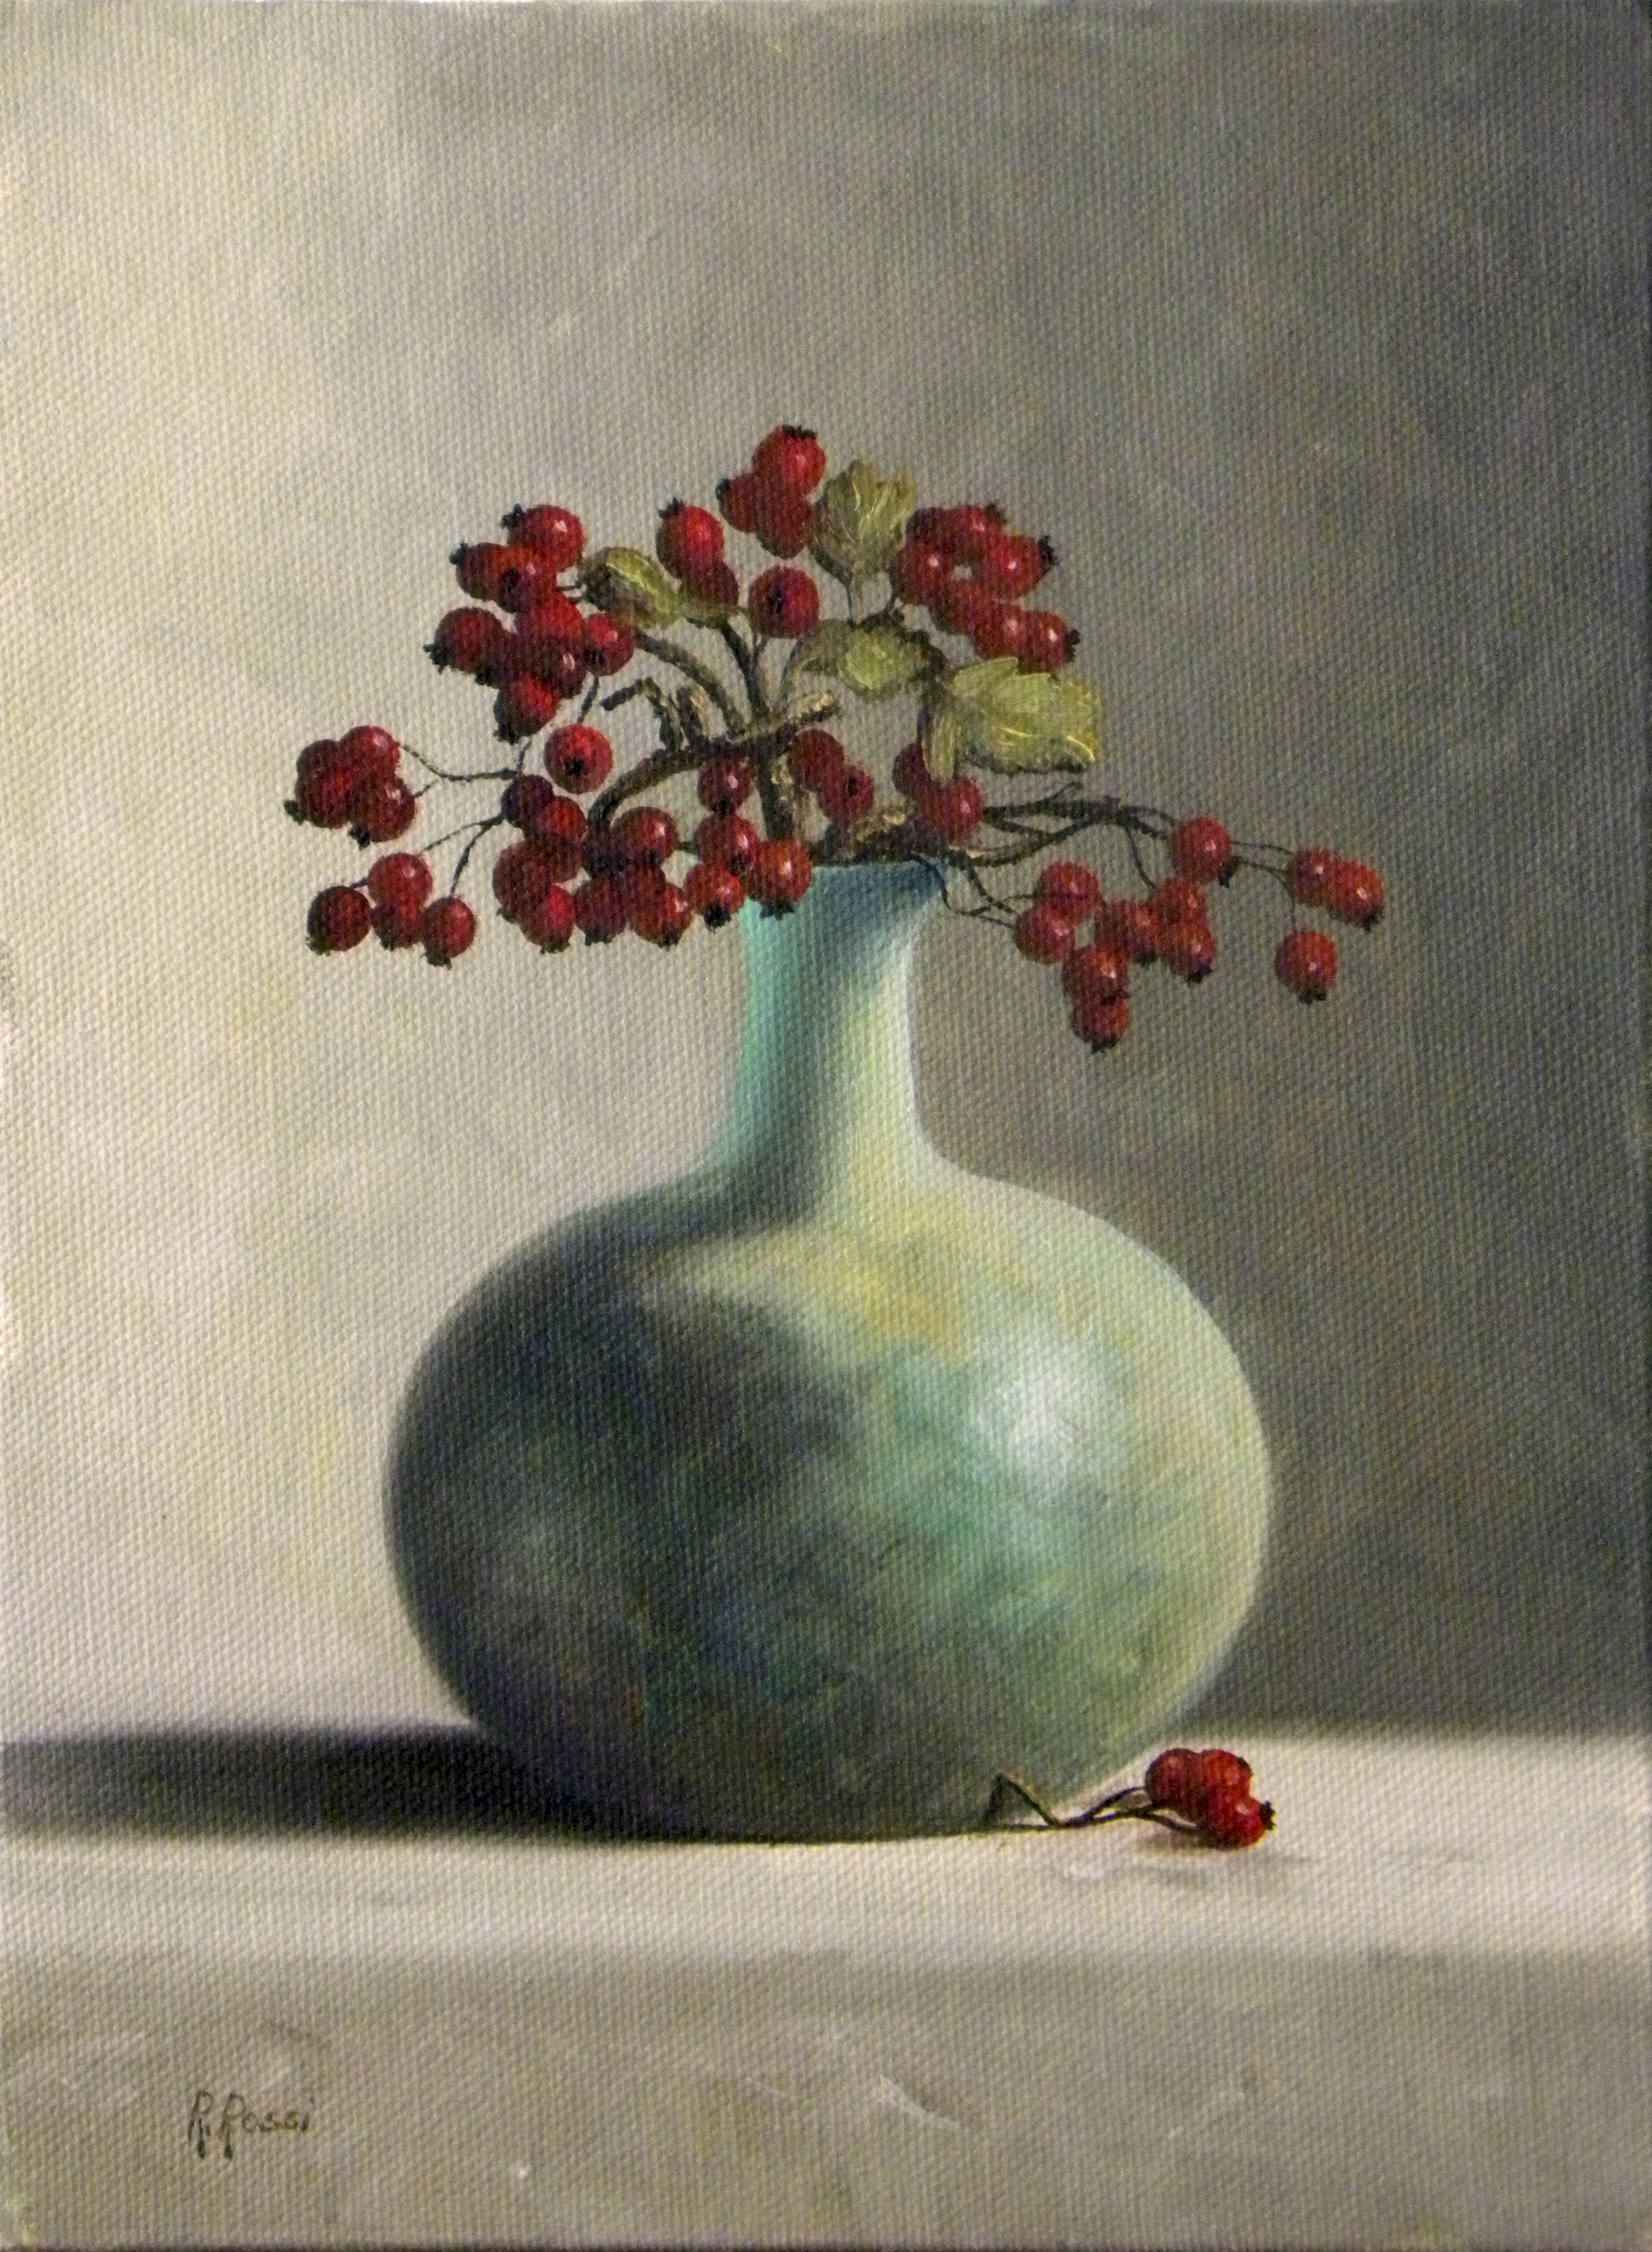 2013 roberta rossi – Vaso biancospino – olio su tela applicata a cartone – 24 x 18